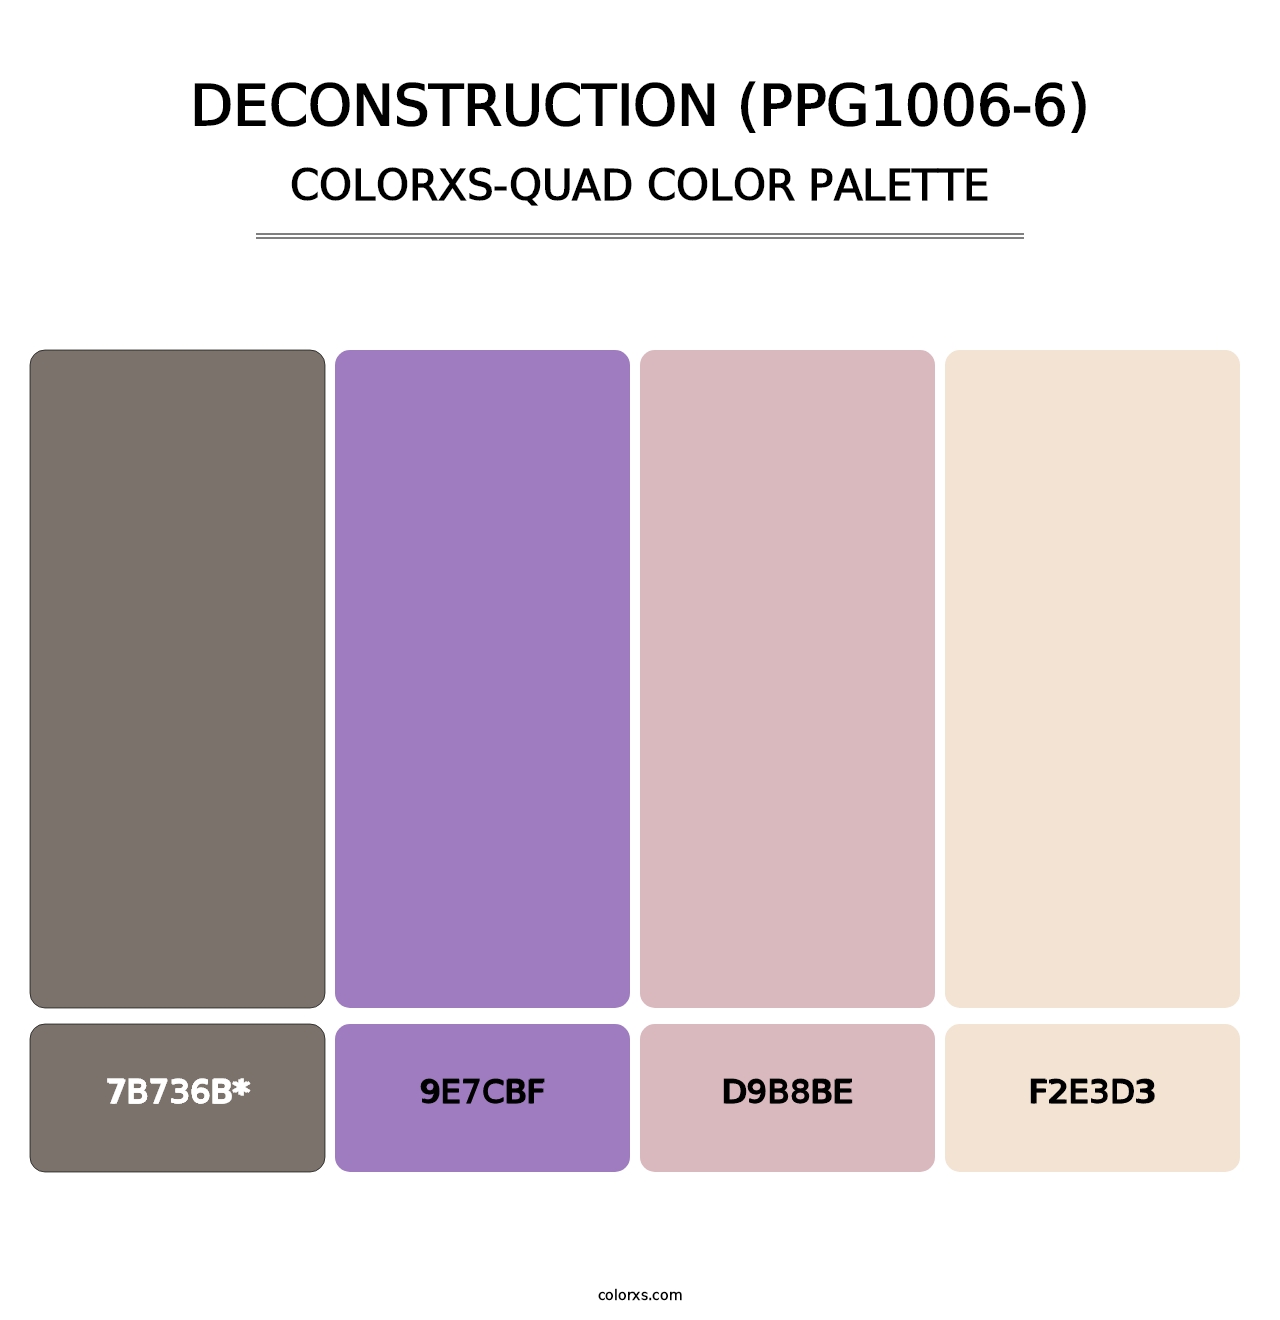 Deconstruction (PPG1006-6) - Colorxs Quad Palette